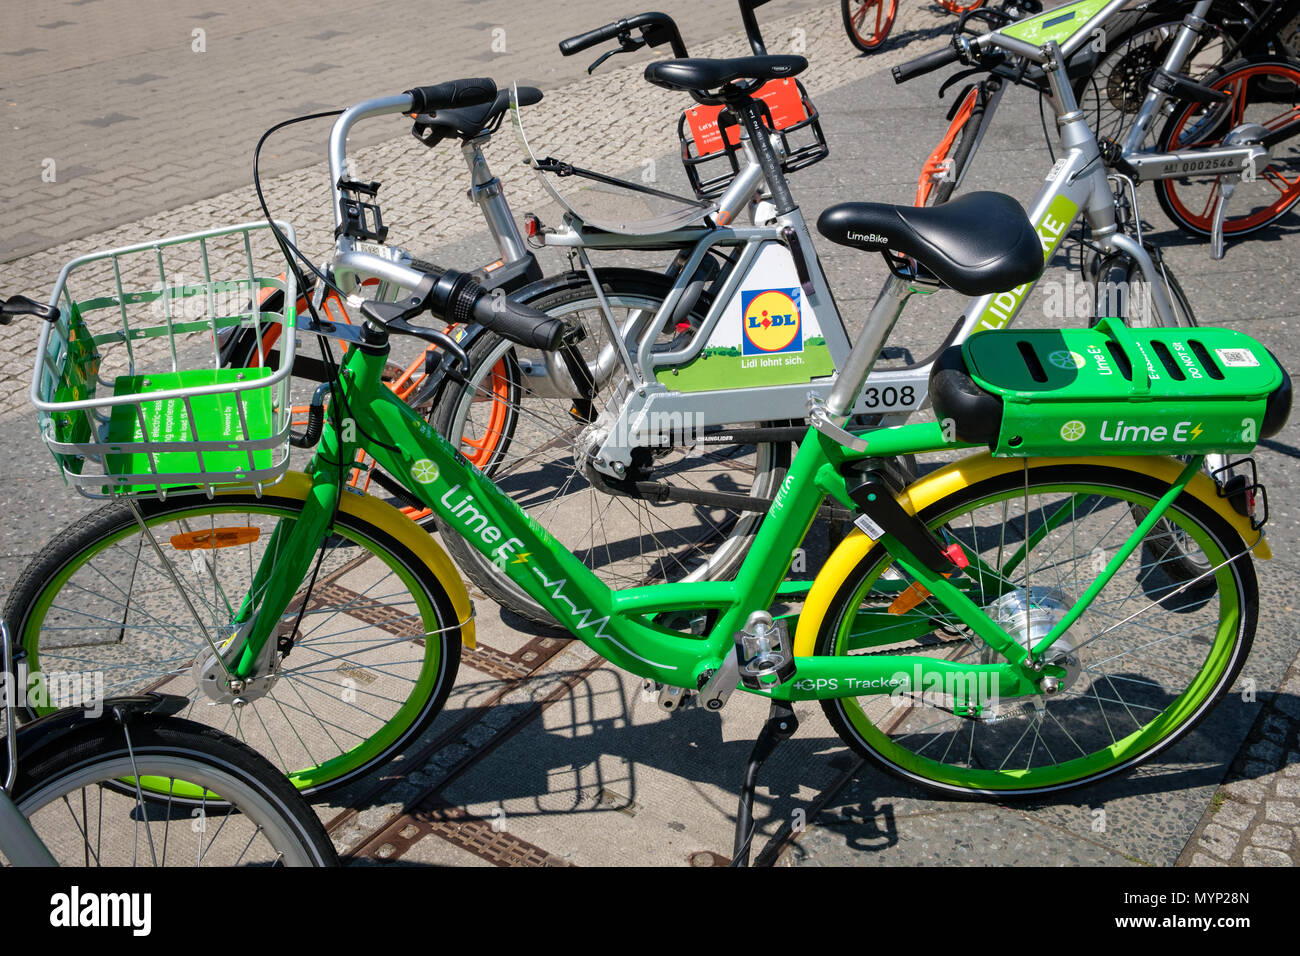 Berlin, Allemagne - juin 2018 : De nombreux vélos électriques de la société LimeBike vélo-partage à Berlin, Allemagne Banque D'Images